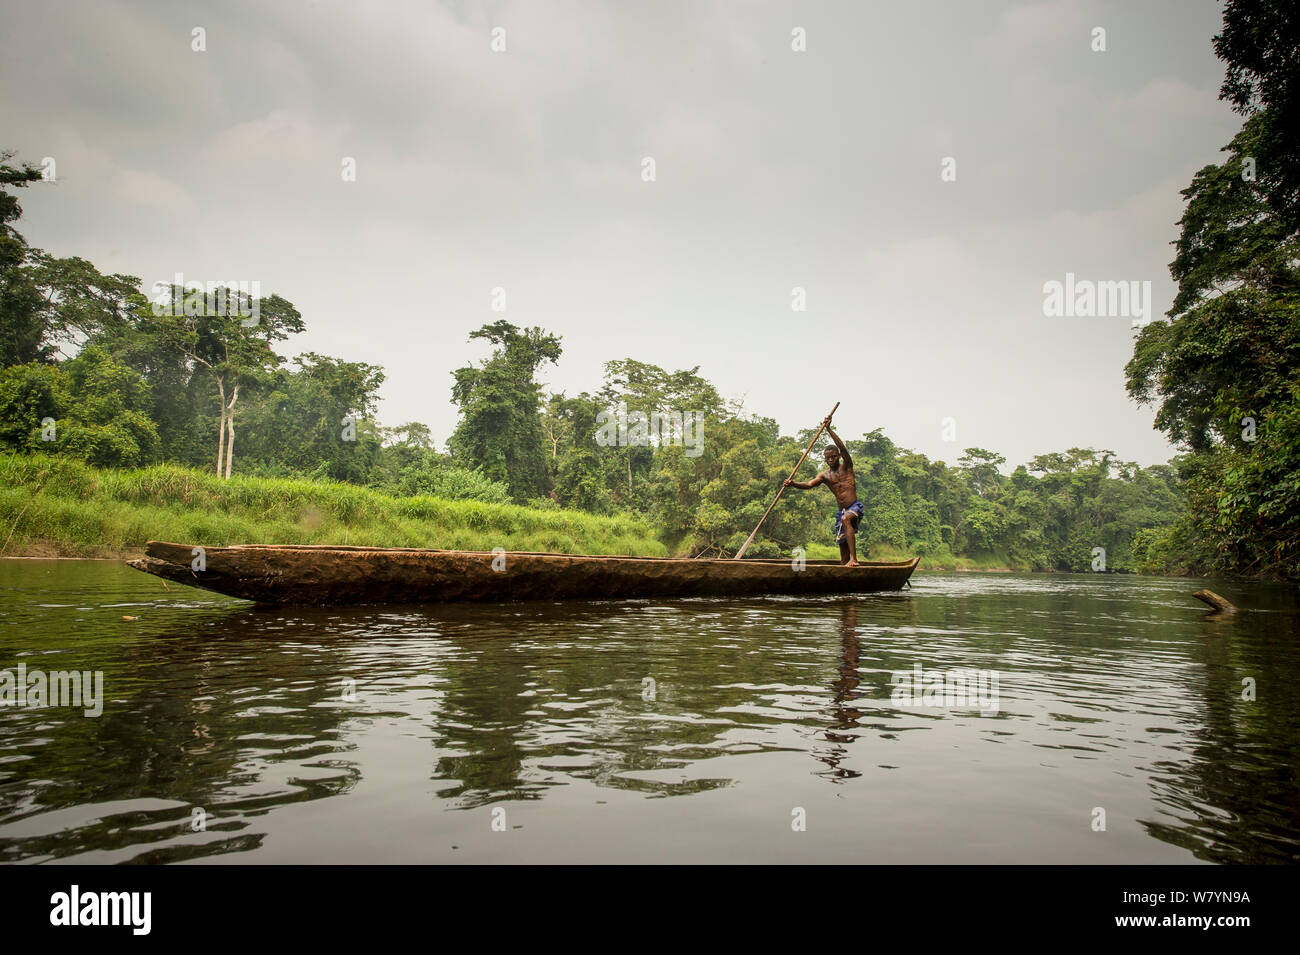 Pêcheur sur la rivière, Parc National de la Salonga, République démocratique du Congo. Septembre 2009. Banque D'Images